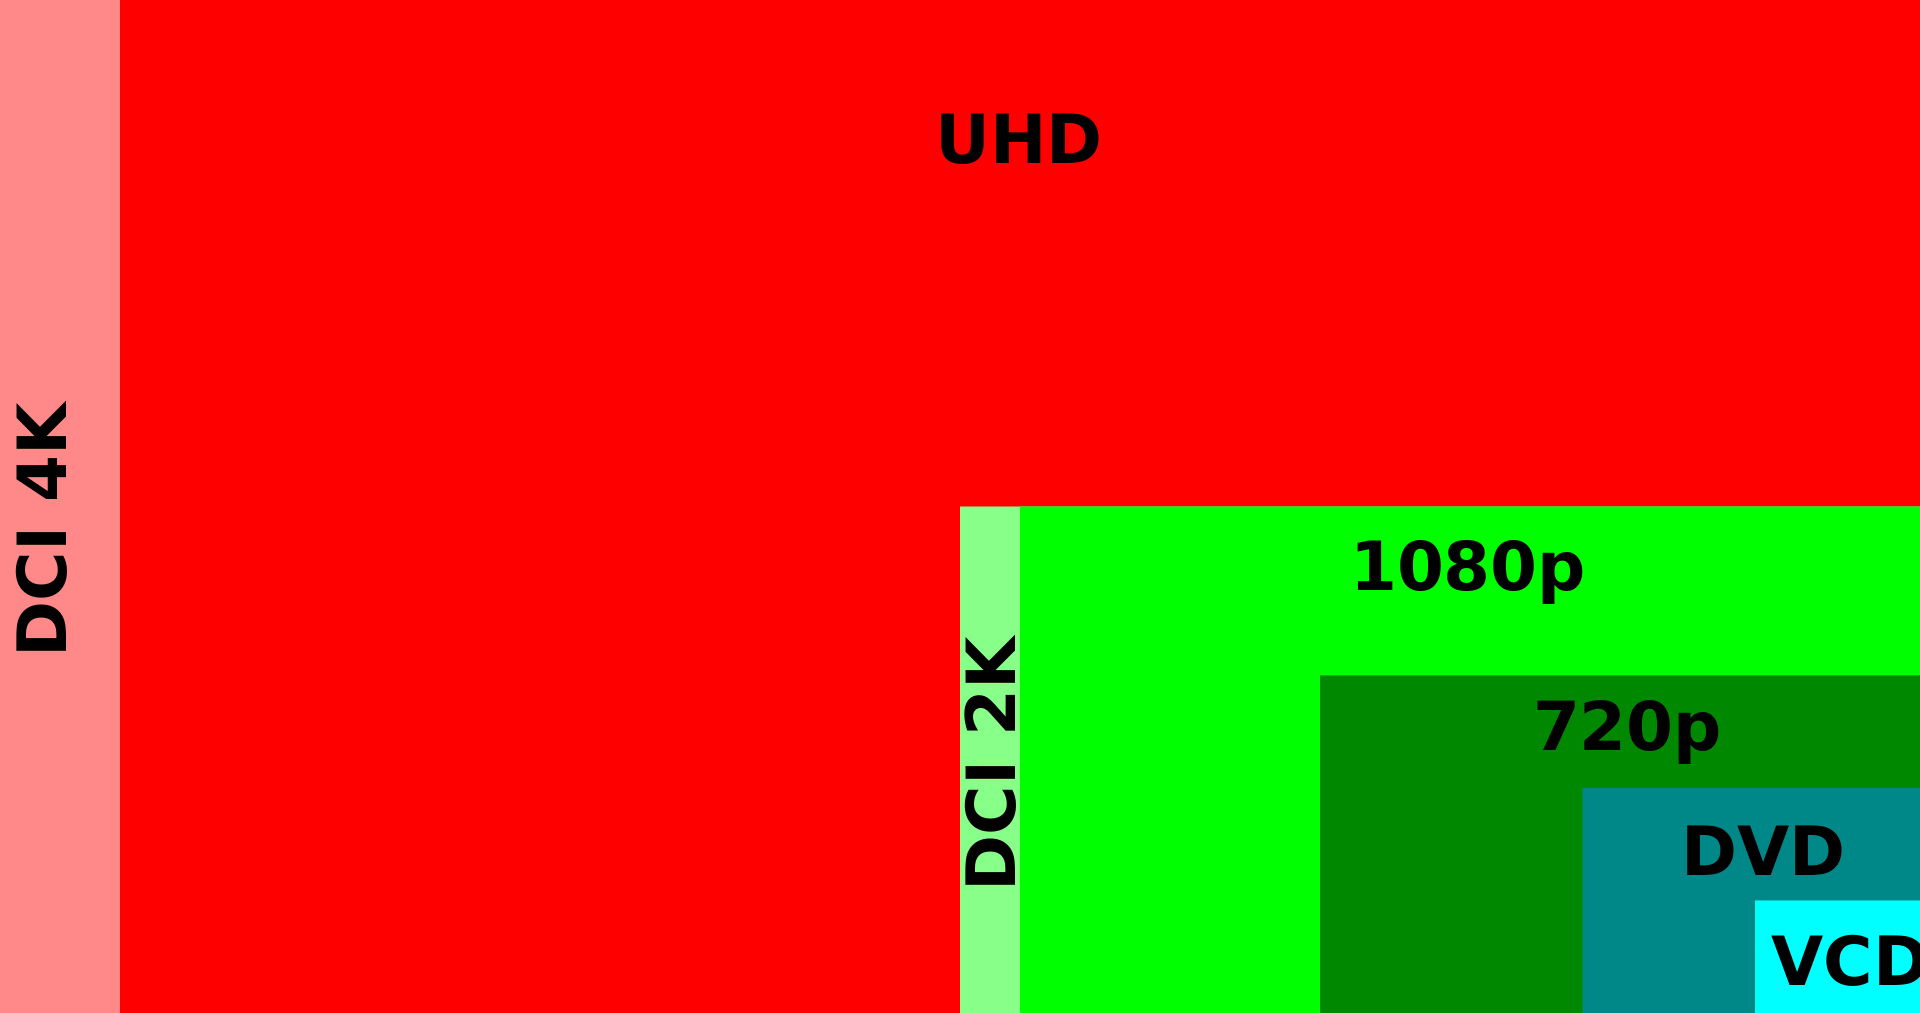 Monitor 4K, QHD e UHD. Quali differenze?